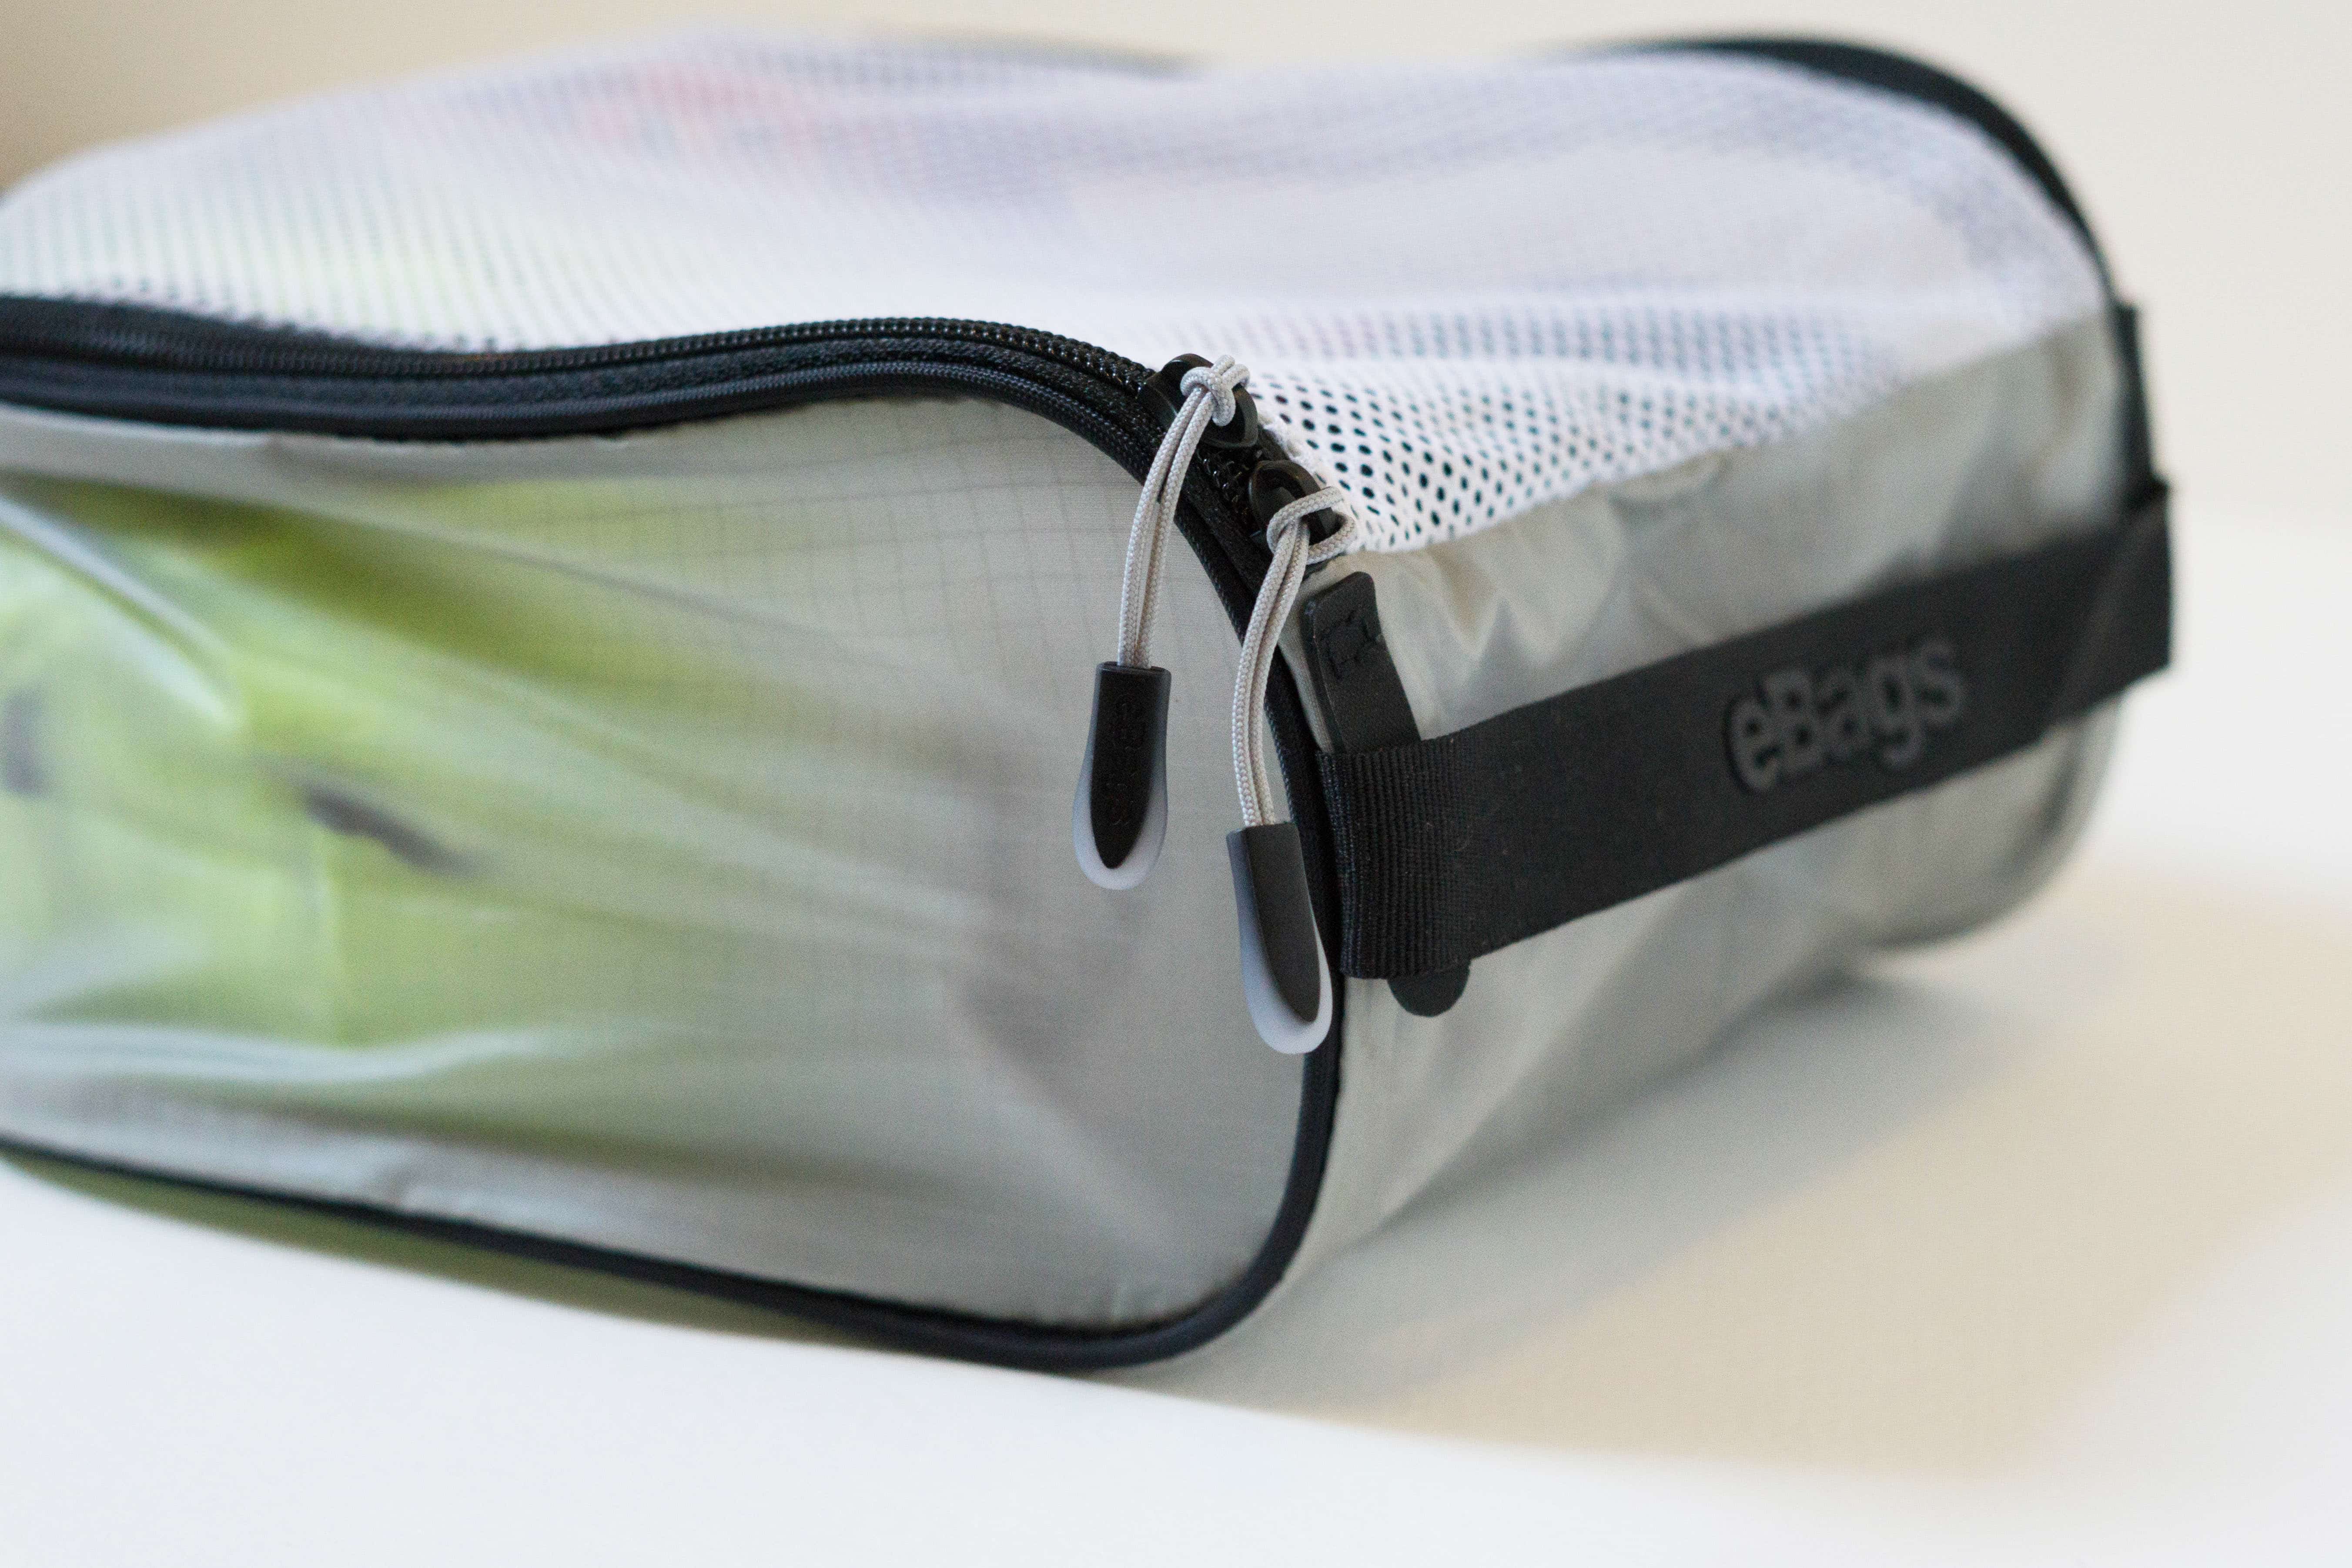 eBags Ultralight Packing Cubes Zipper Pull Detail